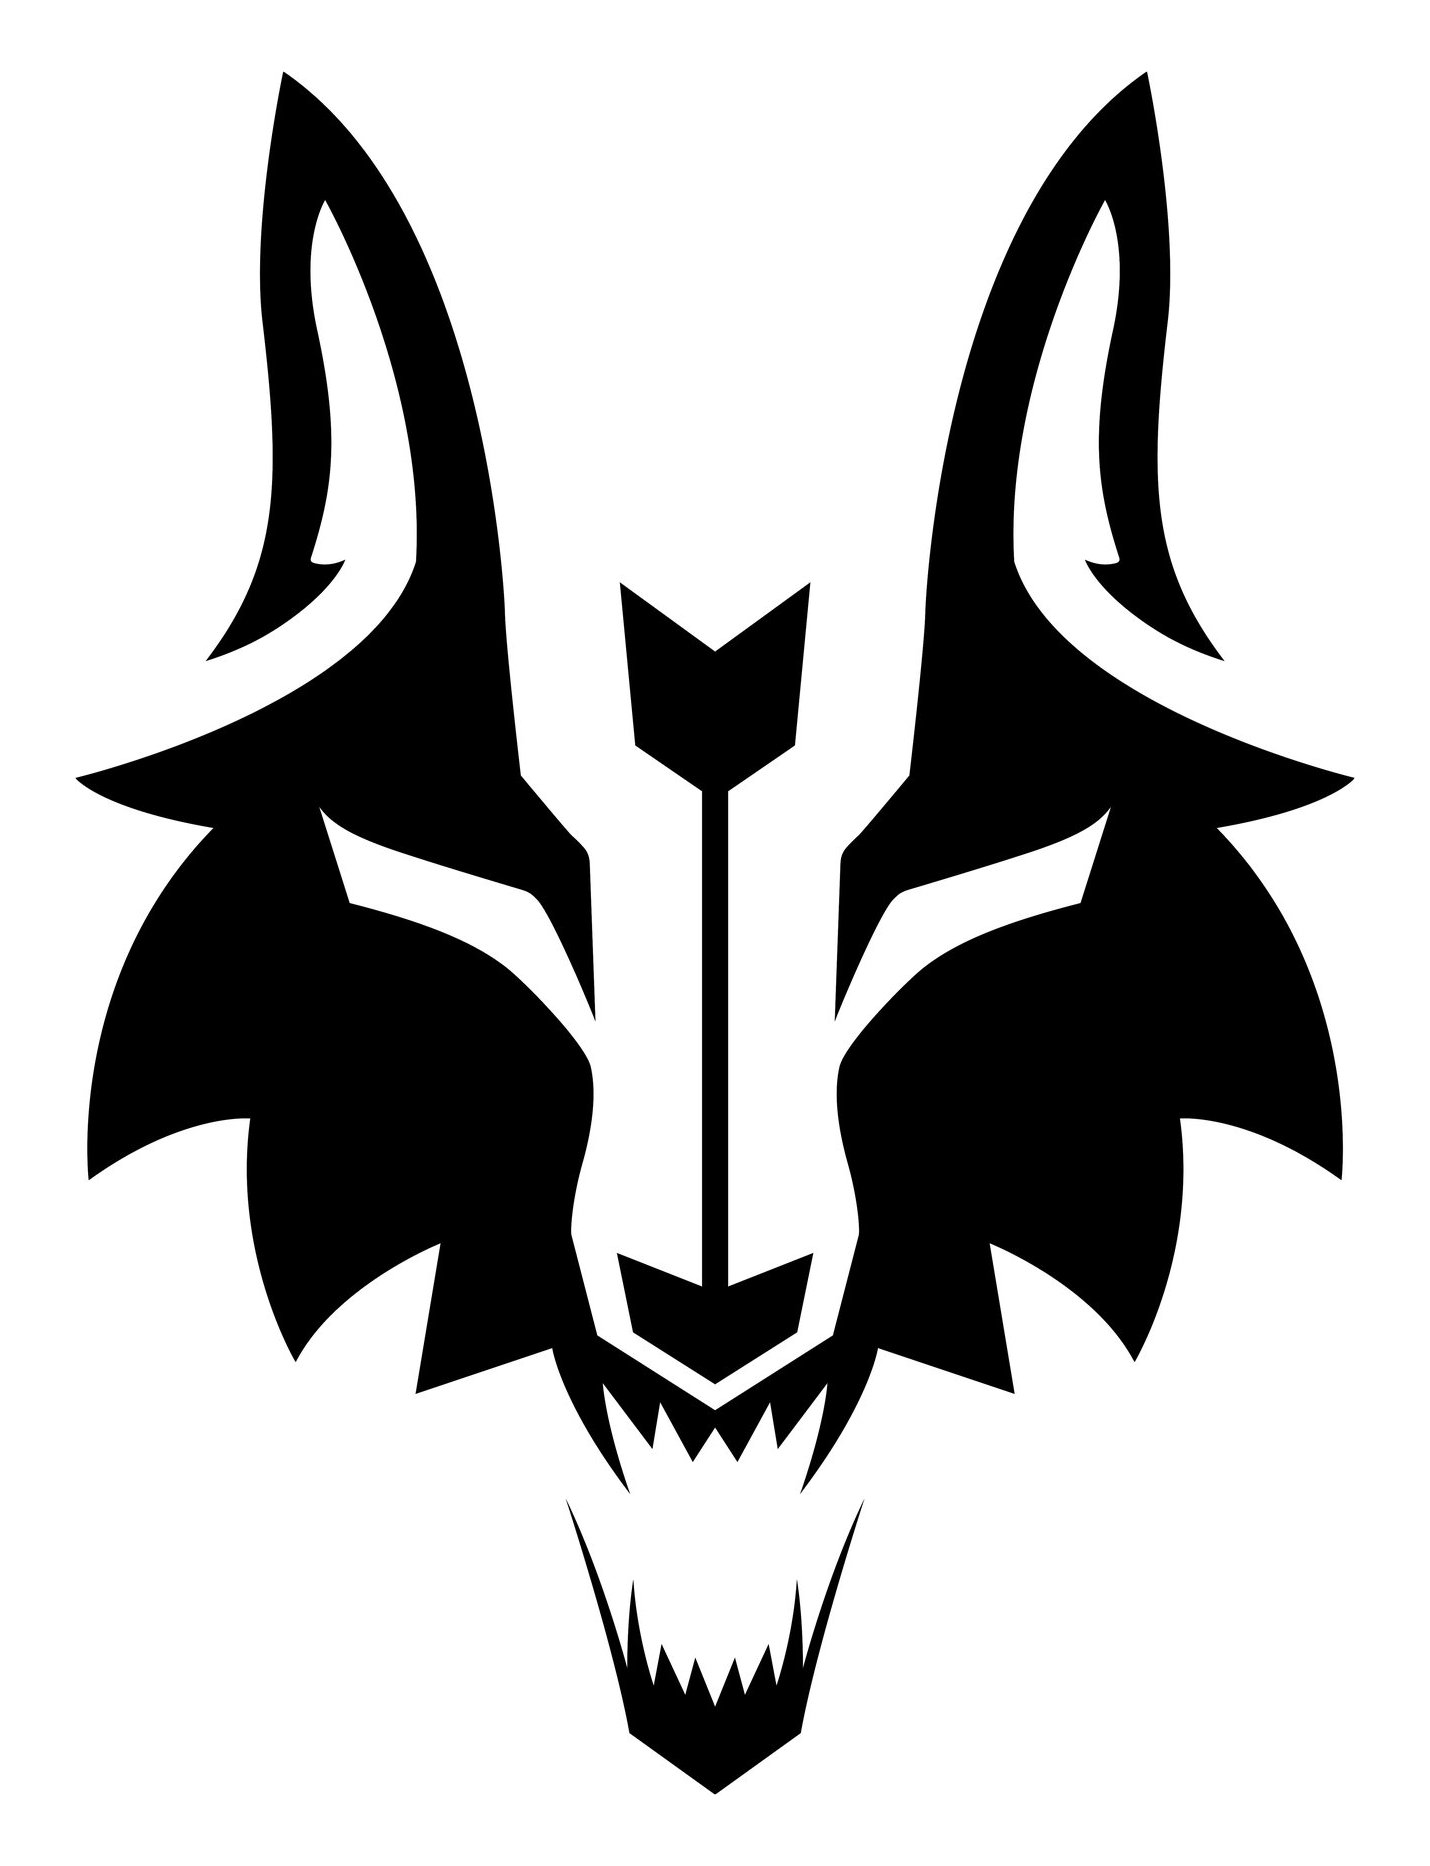 ArtStation - Guara wolf archery logo, Andrés Bazán